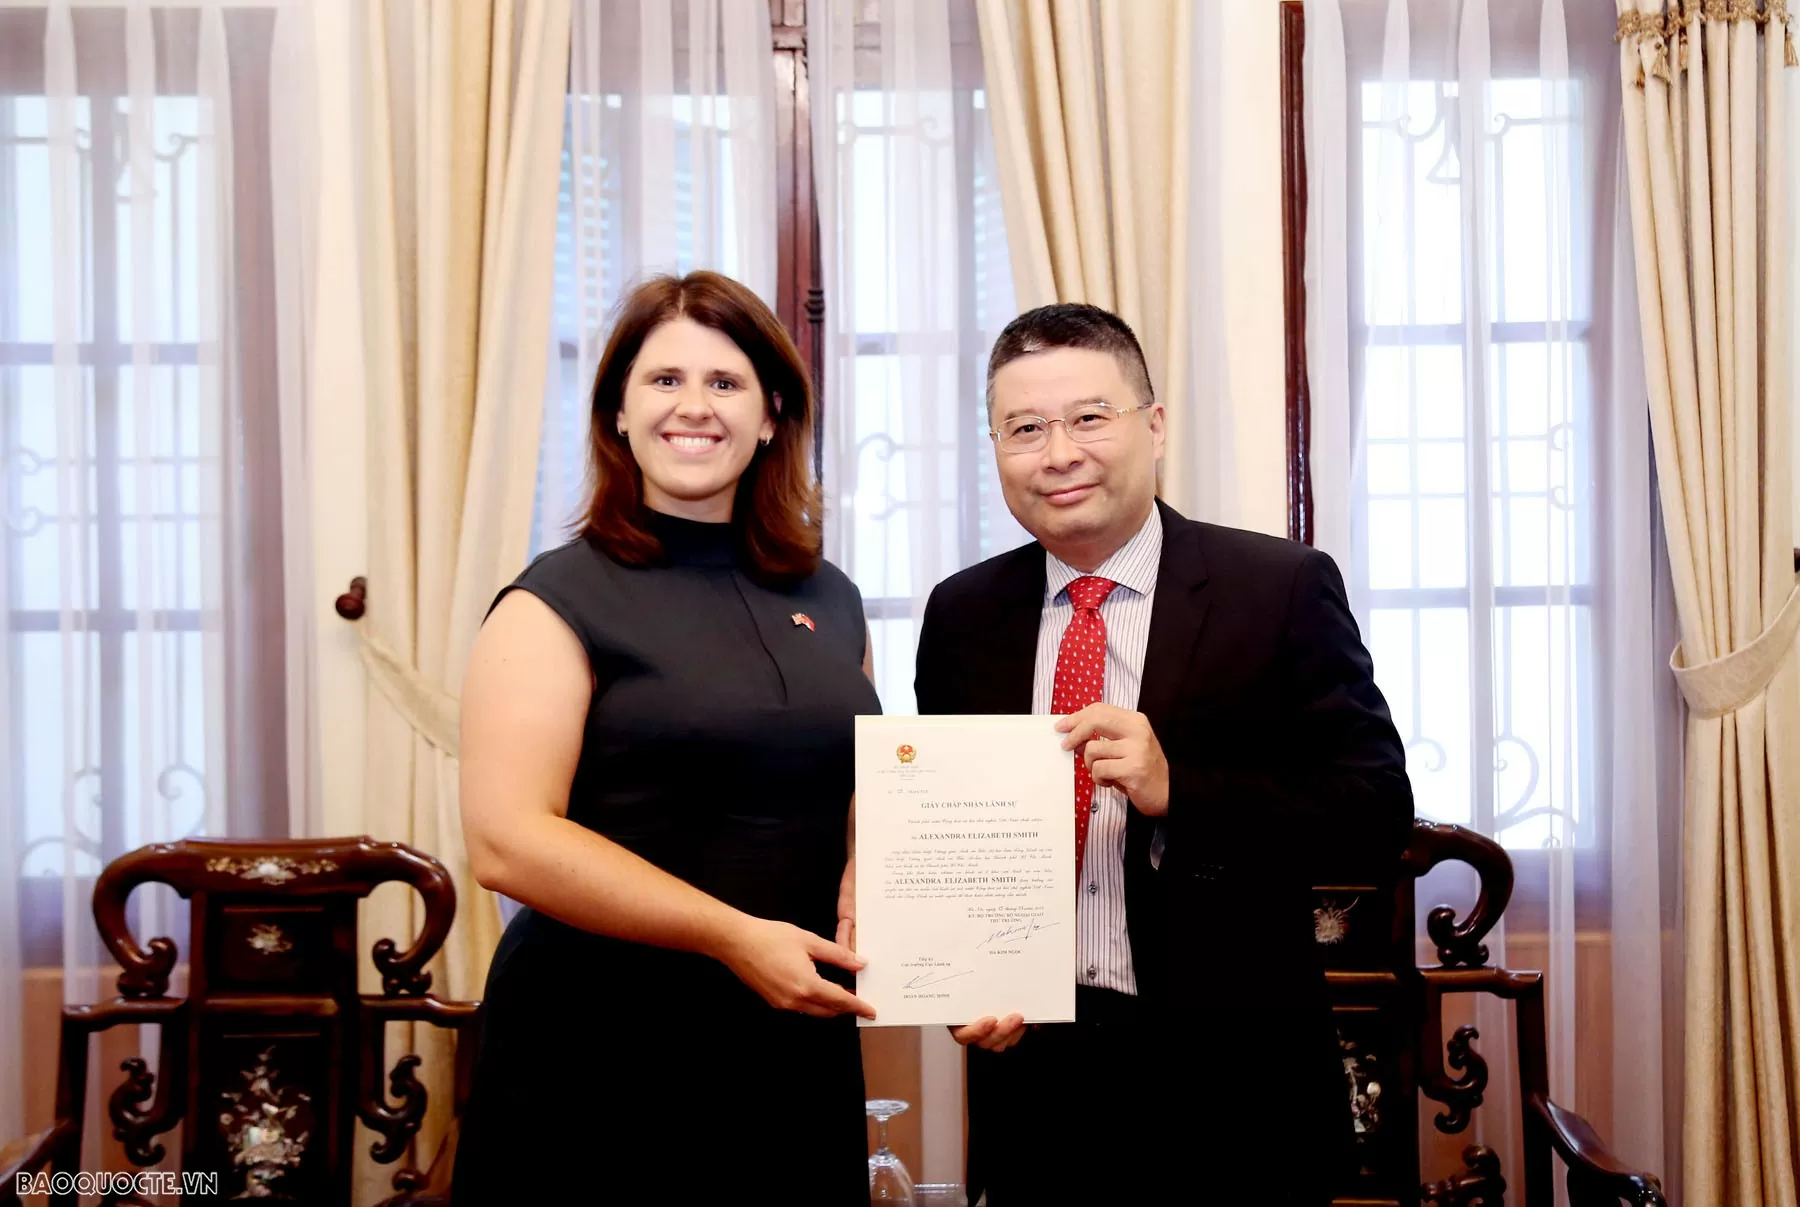 Bộ Ngoại giao trao giấy chấp nhận lãnh sự cho Tổng Lãnh sự của Liên hiệp Vương quốc Anh và Bắc Ireland tại Thành phố Hồ Chí Minh